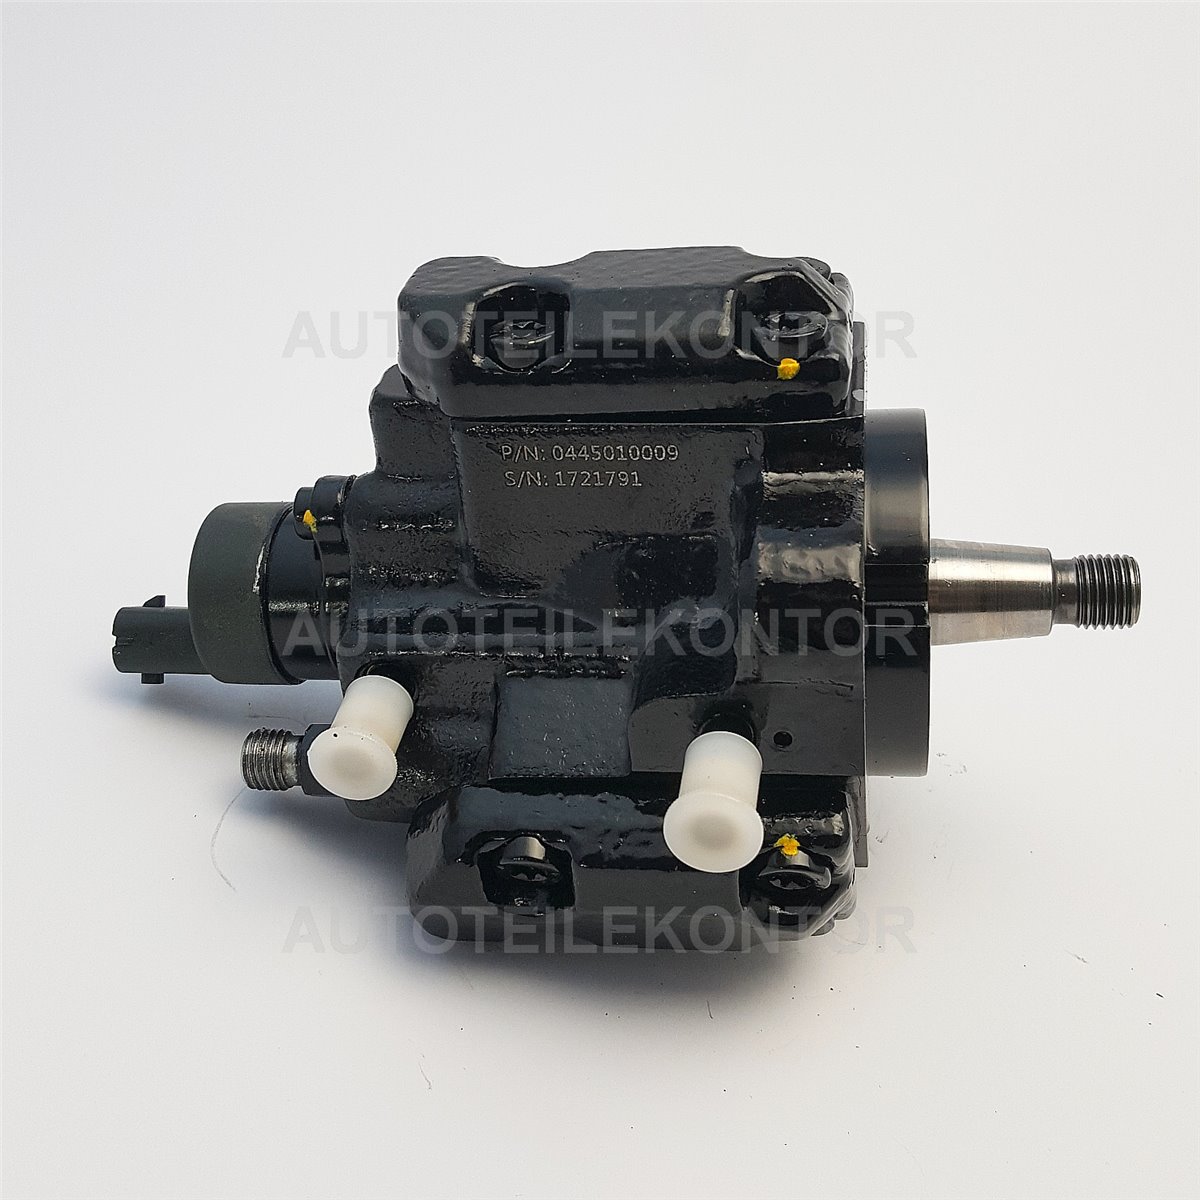 Einspritzpumpe Common Rail Fuel Pump für BMW 730d (E38) X5 3.0d (E53) 184-193PS